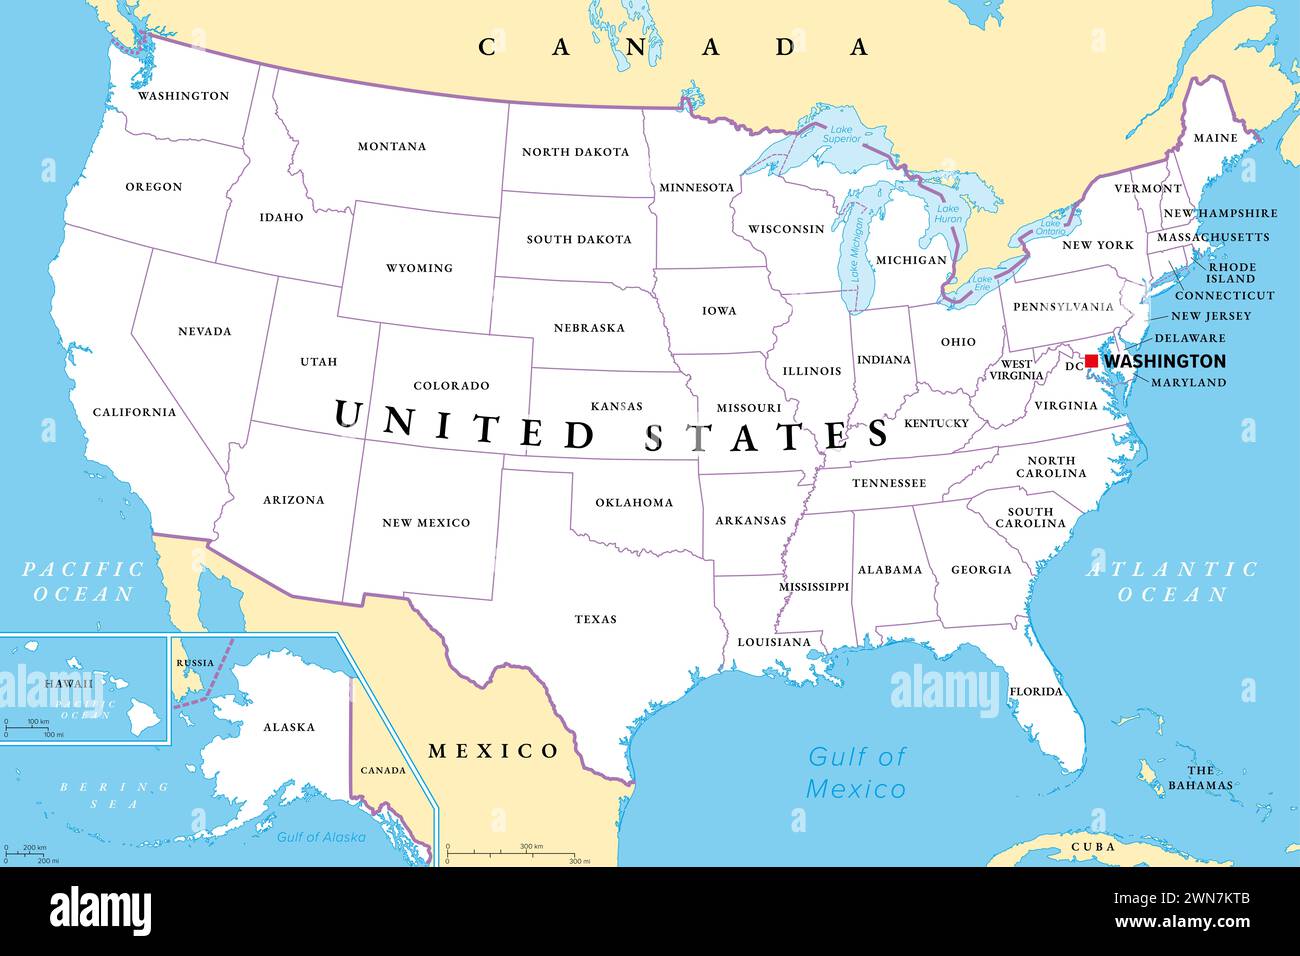 Vereinigte Staaten von Amerika, politische Karte. Fünfzig staaten mit ihren eigenen geografischen Gebieten und Grenzen, die zu einer union zusammengebunden sind. Stockfoto